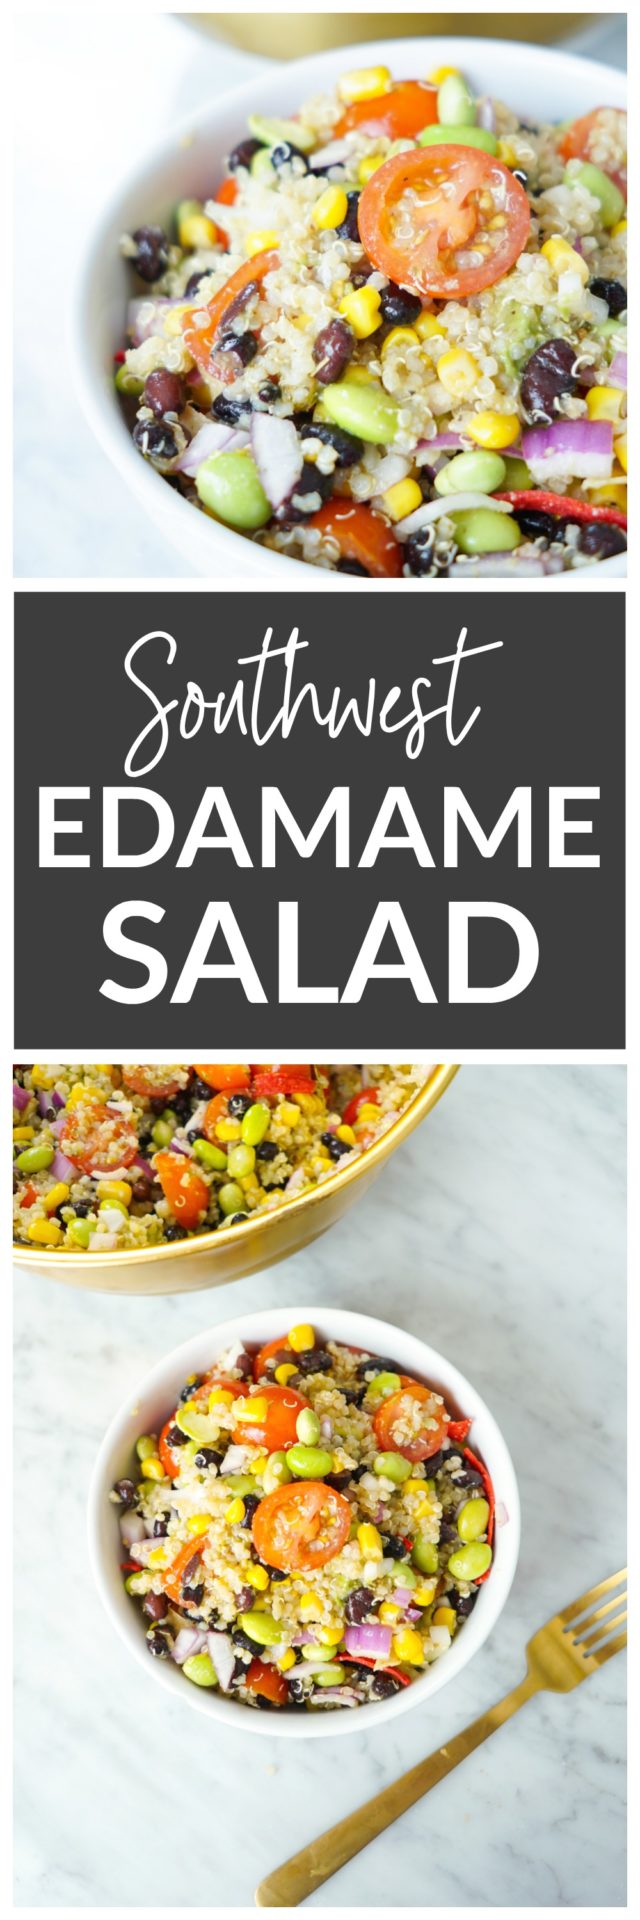 Southwest Edamame Salad - Whitney E. RD